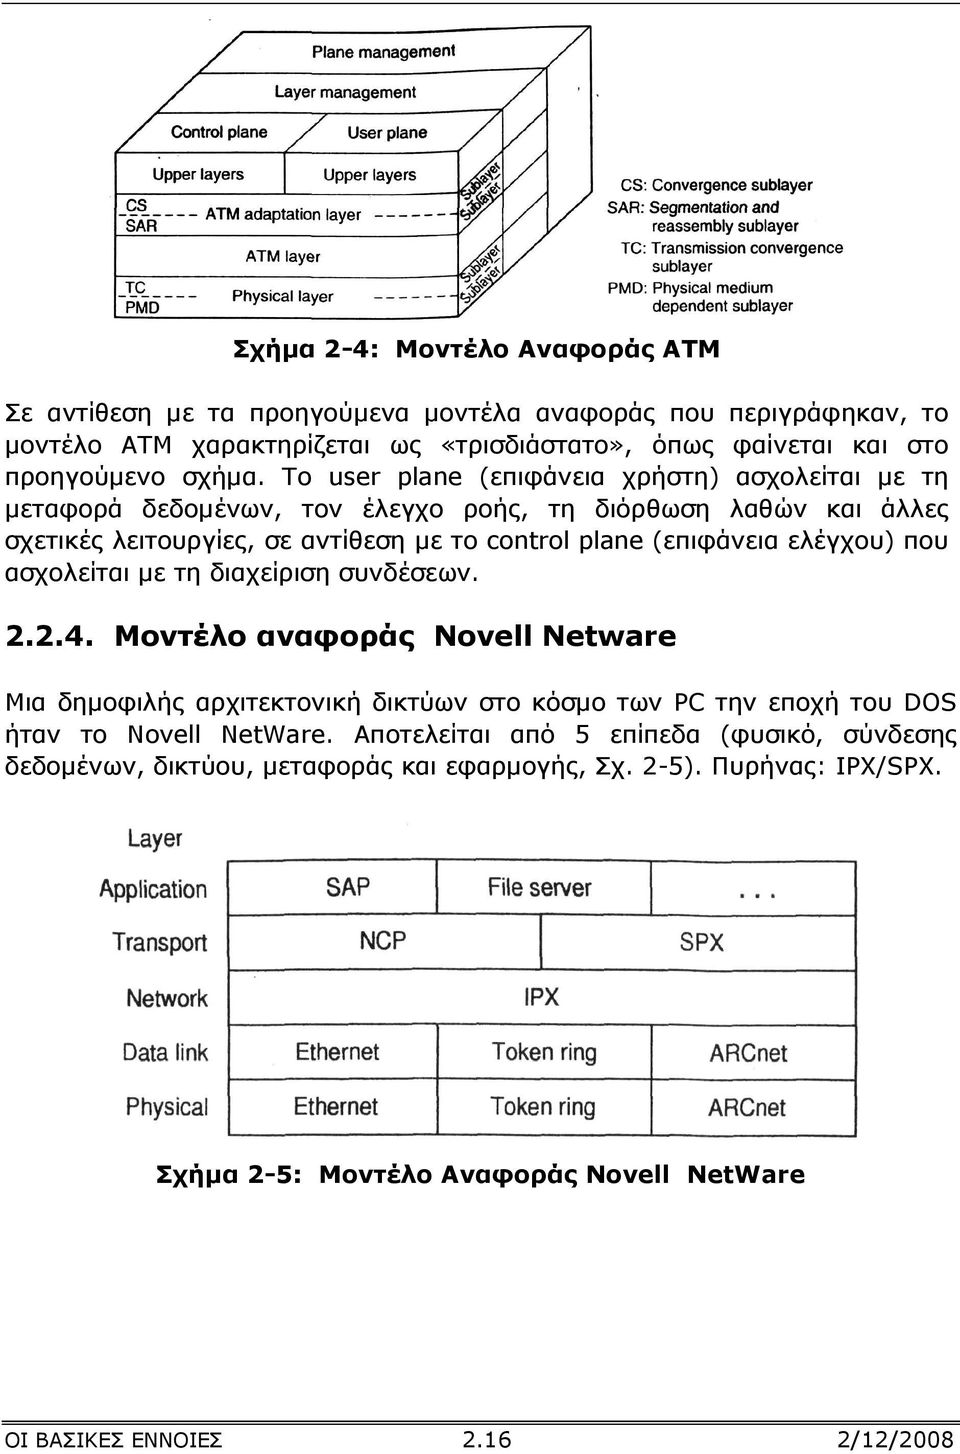 ελέγχου) που ασχολείται µε τη διαχείριση συνδέσεων. 2.2.4. Μοντέλο αναφοράς Novell Netware Μια δηµοφιλής αρχιτεκτονική δικτύων στο κόσµο των PC την εποχή του DOS ήταν το Novell NetWare.